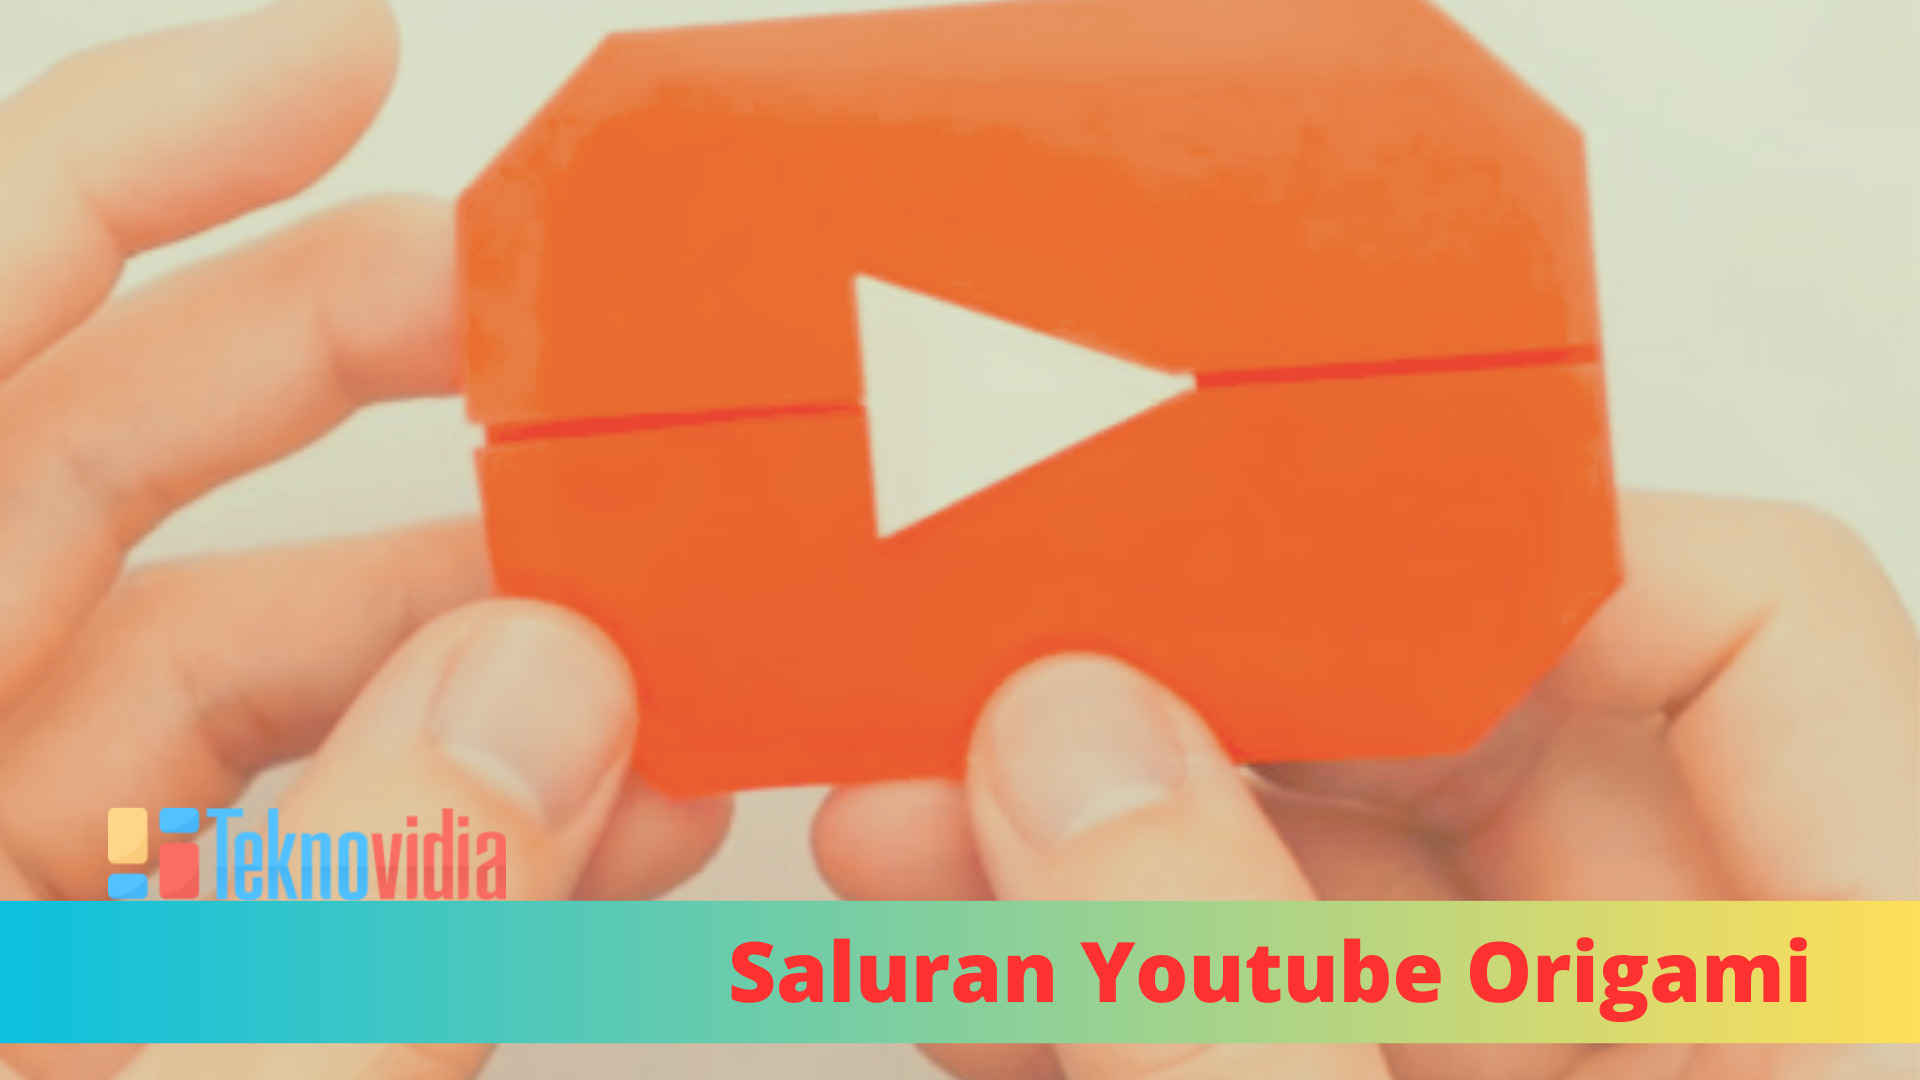 Saluran Youtube Origami